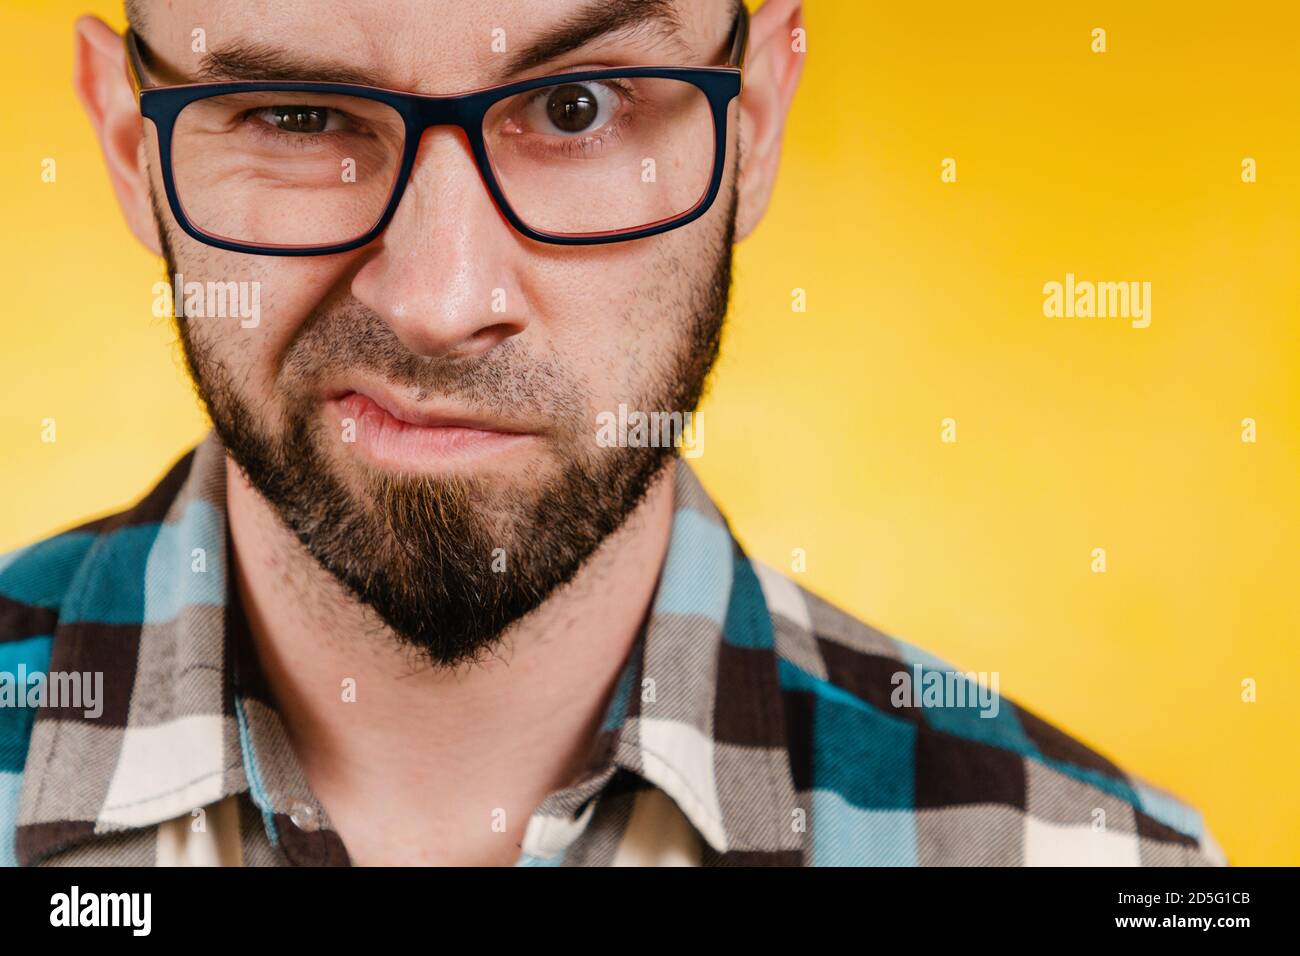 Les gens et les émotions. Un homme barbu portant des lunettes et une chemise à carreaux bleus exprime son aversion. Arrière-plan jaune. Gros plan. Banque D'Images